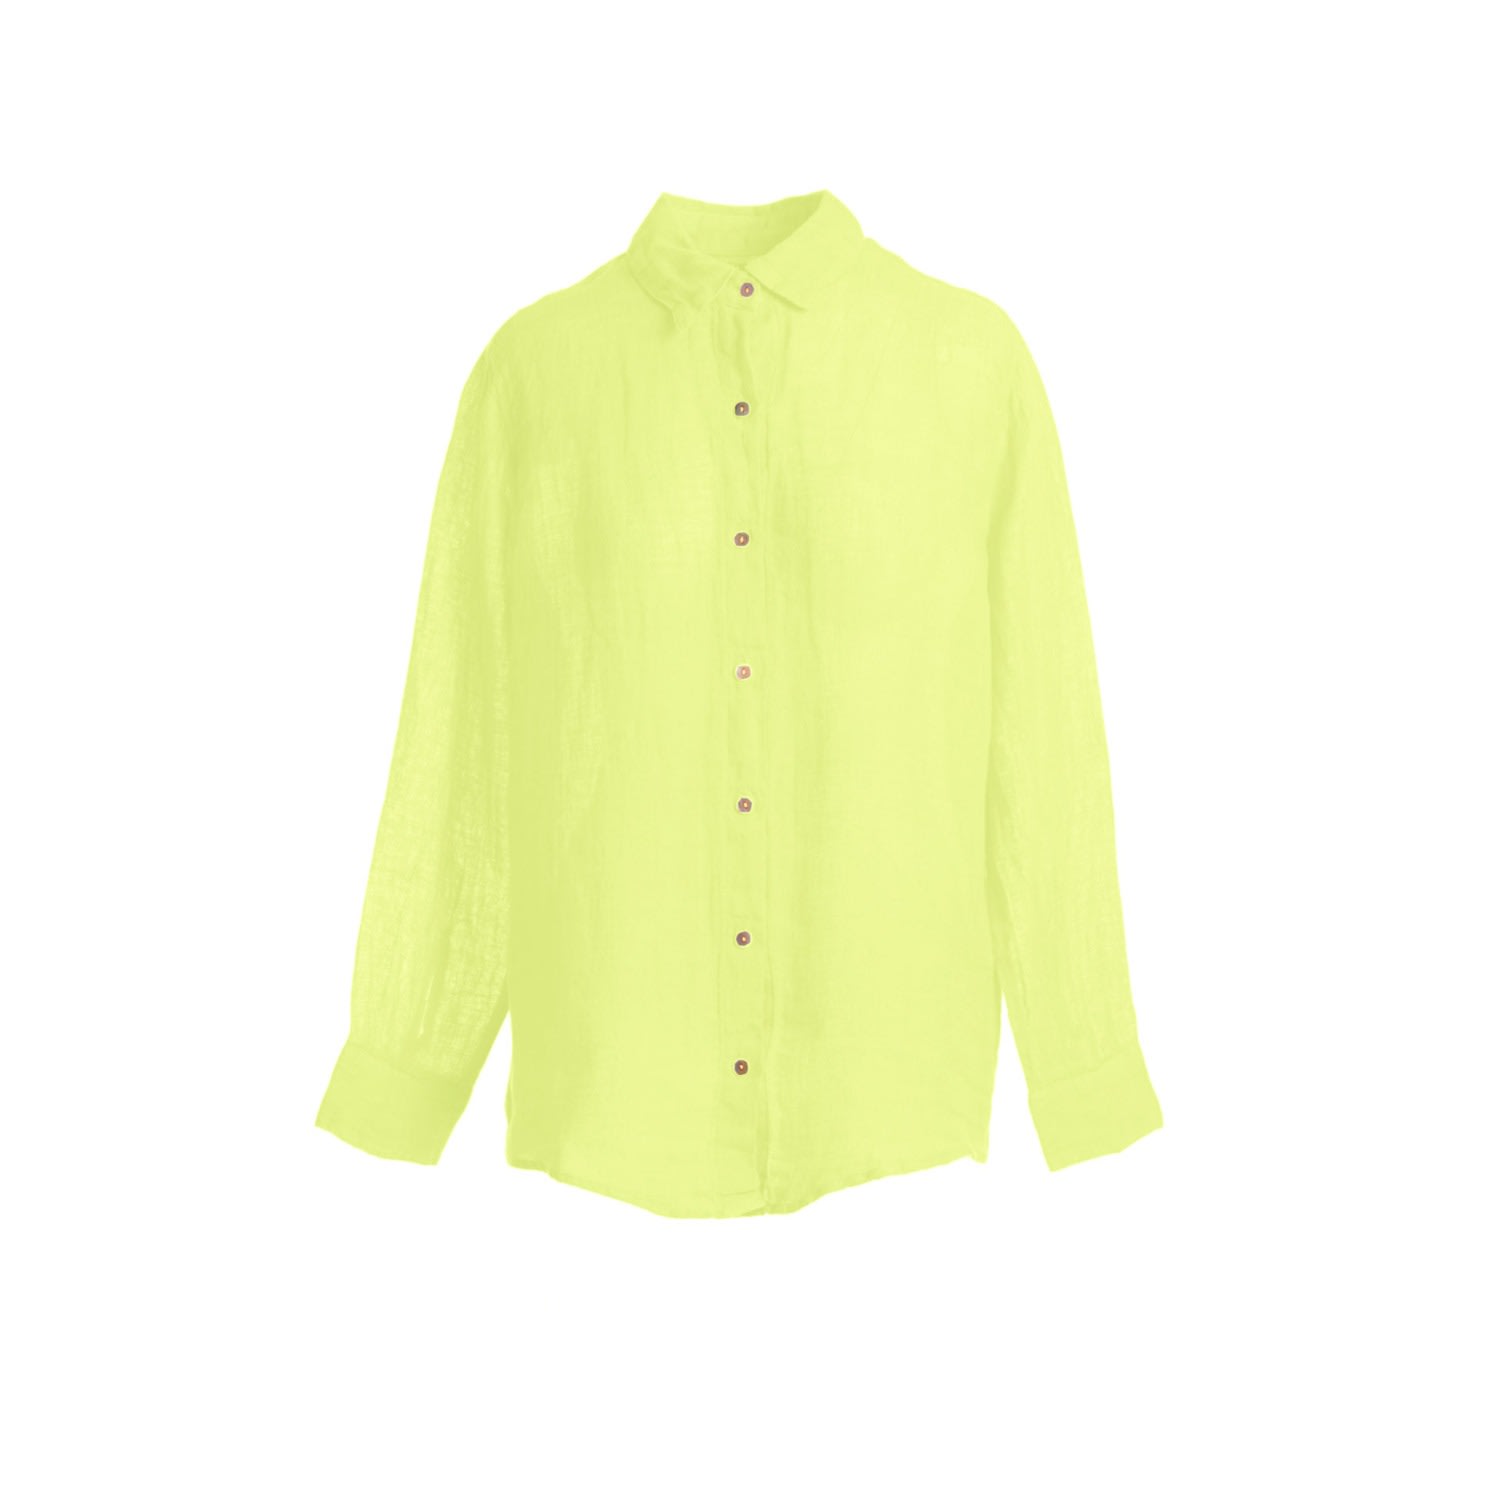 Haris Cotton Women's Yellow / Orange Linen Gauze Shirt - Lime In Green